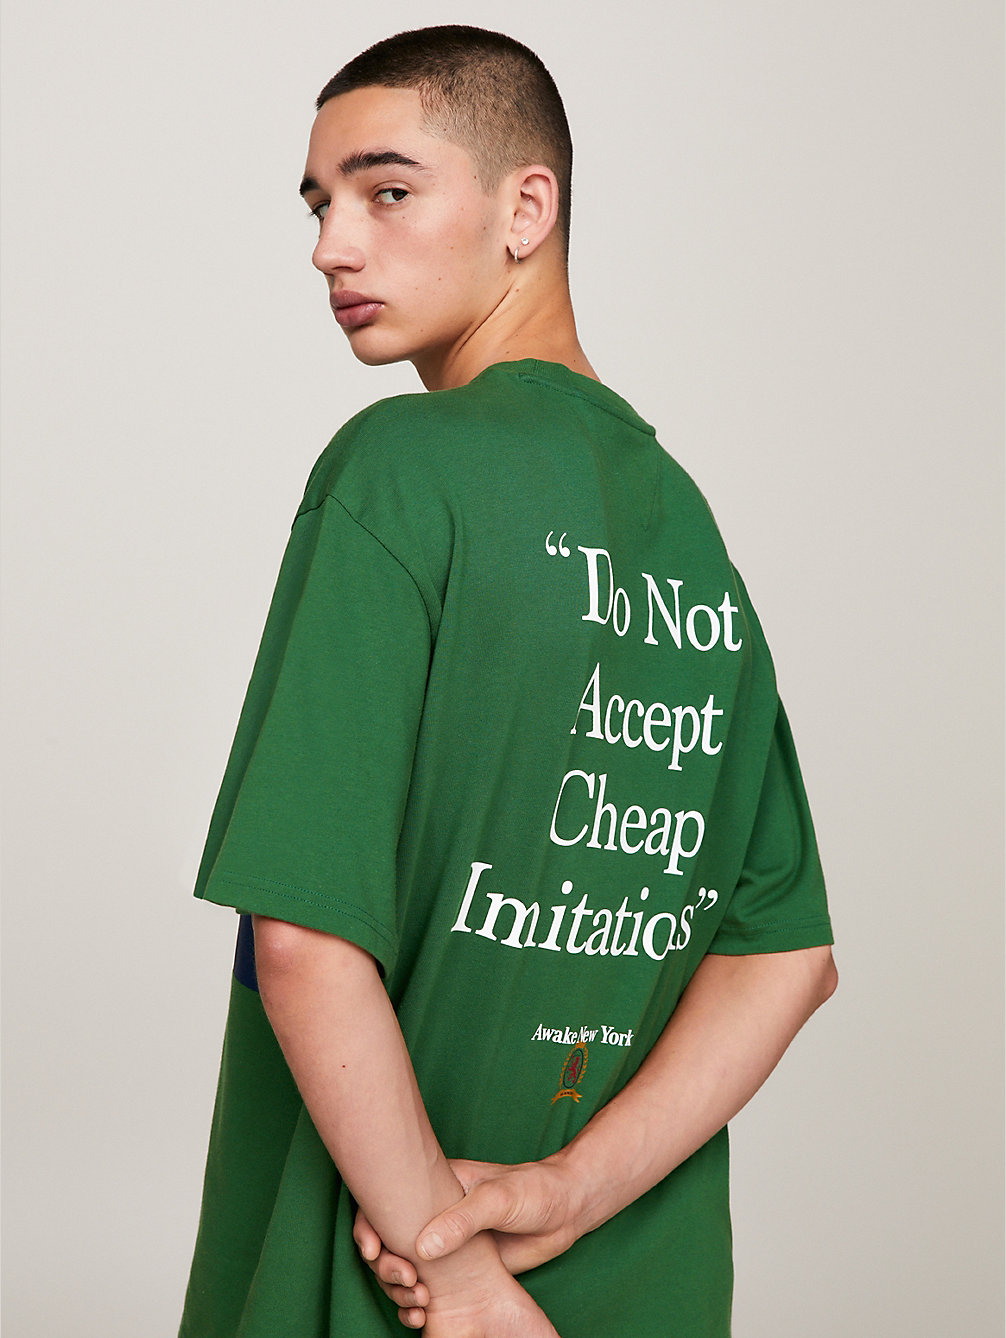 green tommy x awake ny t-shirt mit slogan hinten für herren - tommy jeans